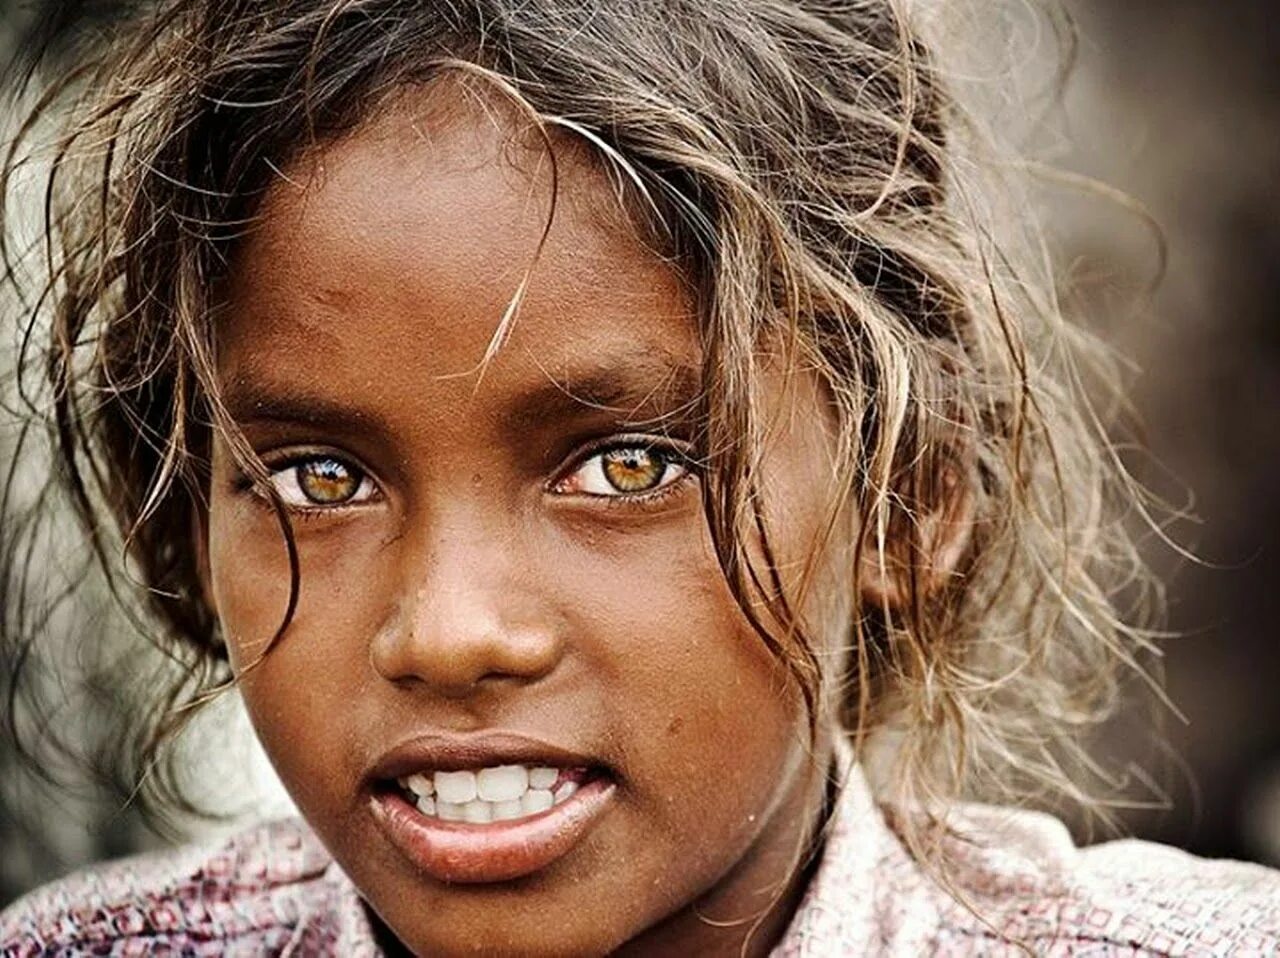 Худший цвет глаз. Девочка с необычными глазами. Необычный цвет глаз. Люди с необычным цветом глаз. Необычные глаза у людей.